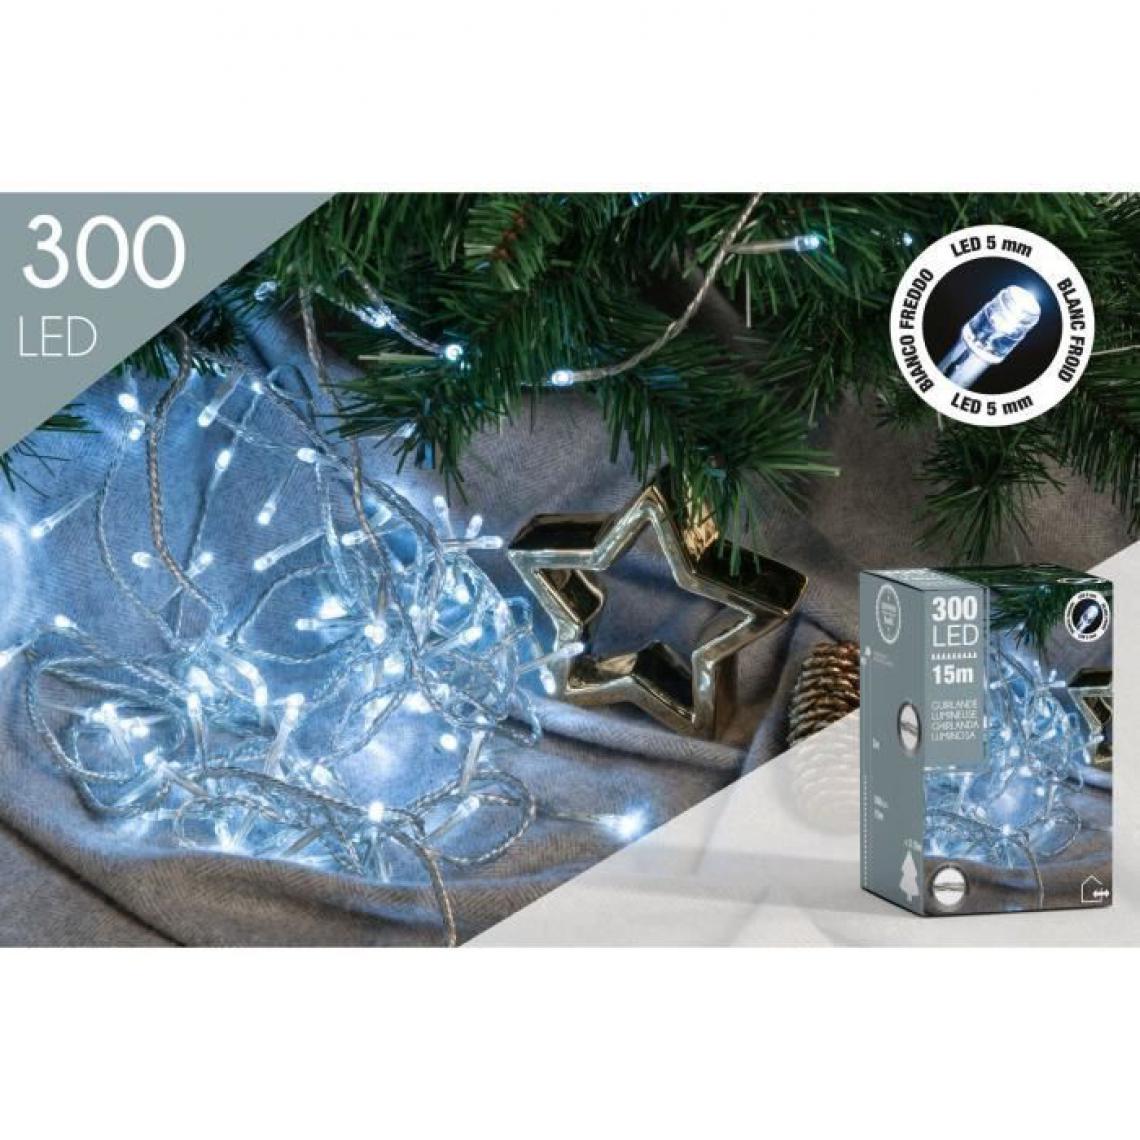 Cp International - Guirlande - 300 LED 5 mm blanc froid - L.12 m fil transparent - Décorations de Noël